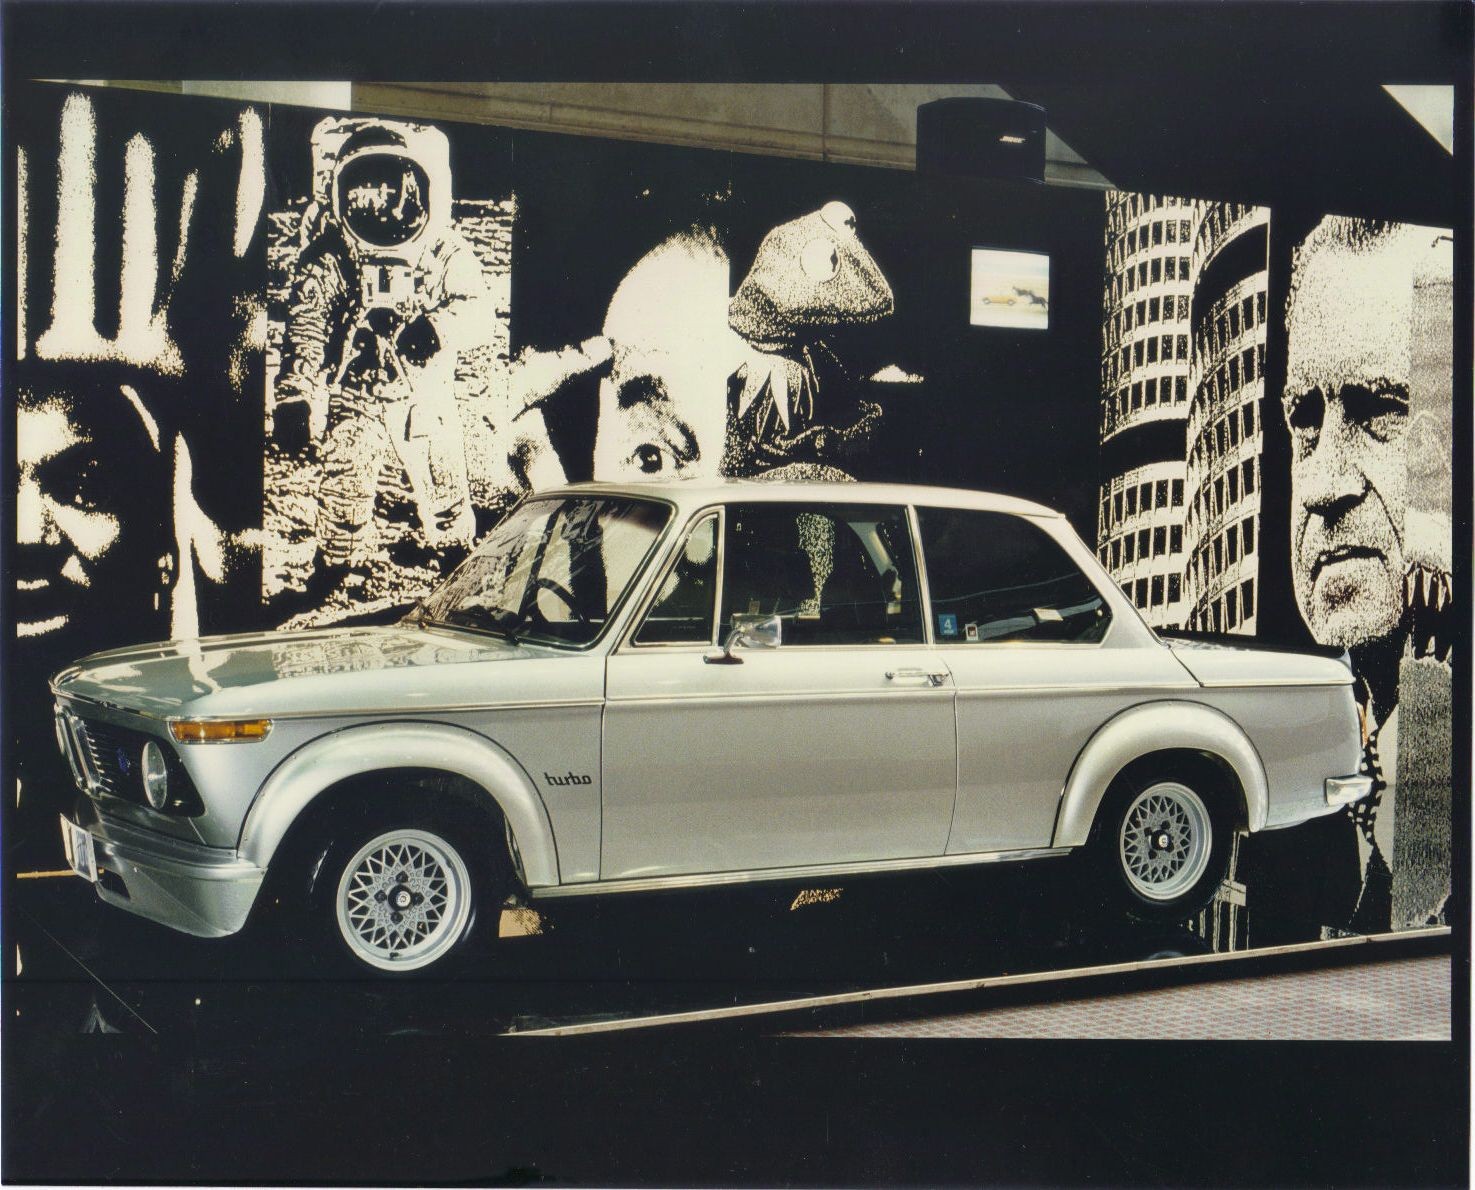 1974 BMW 2002 turbo